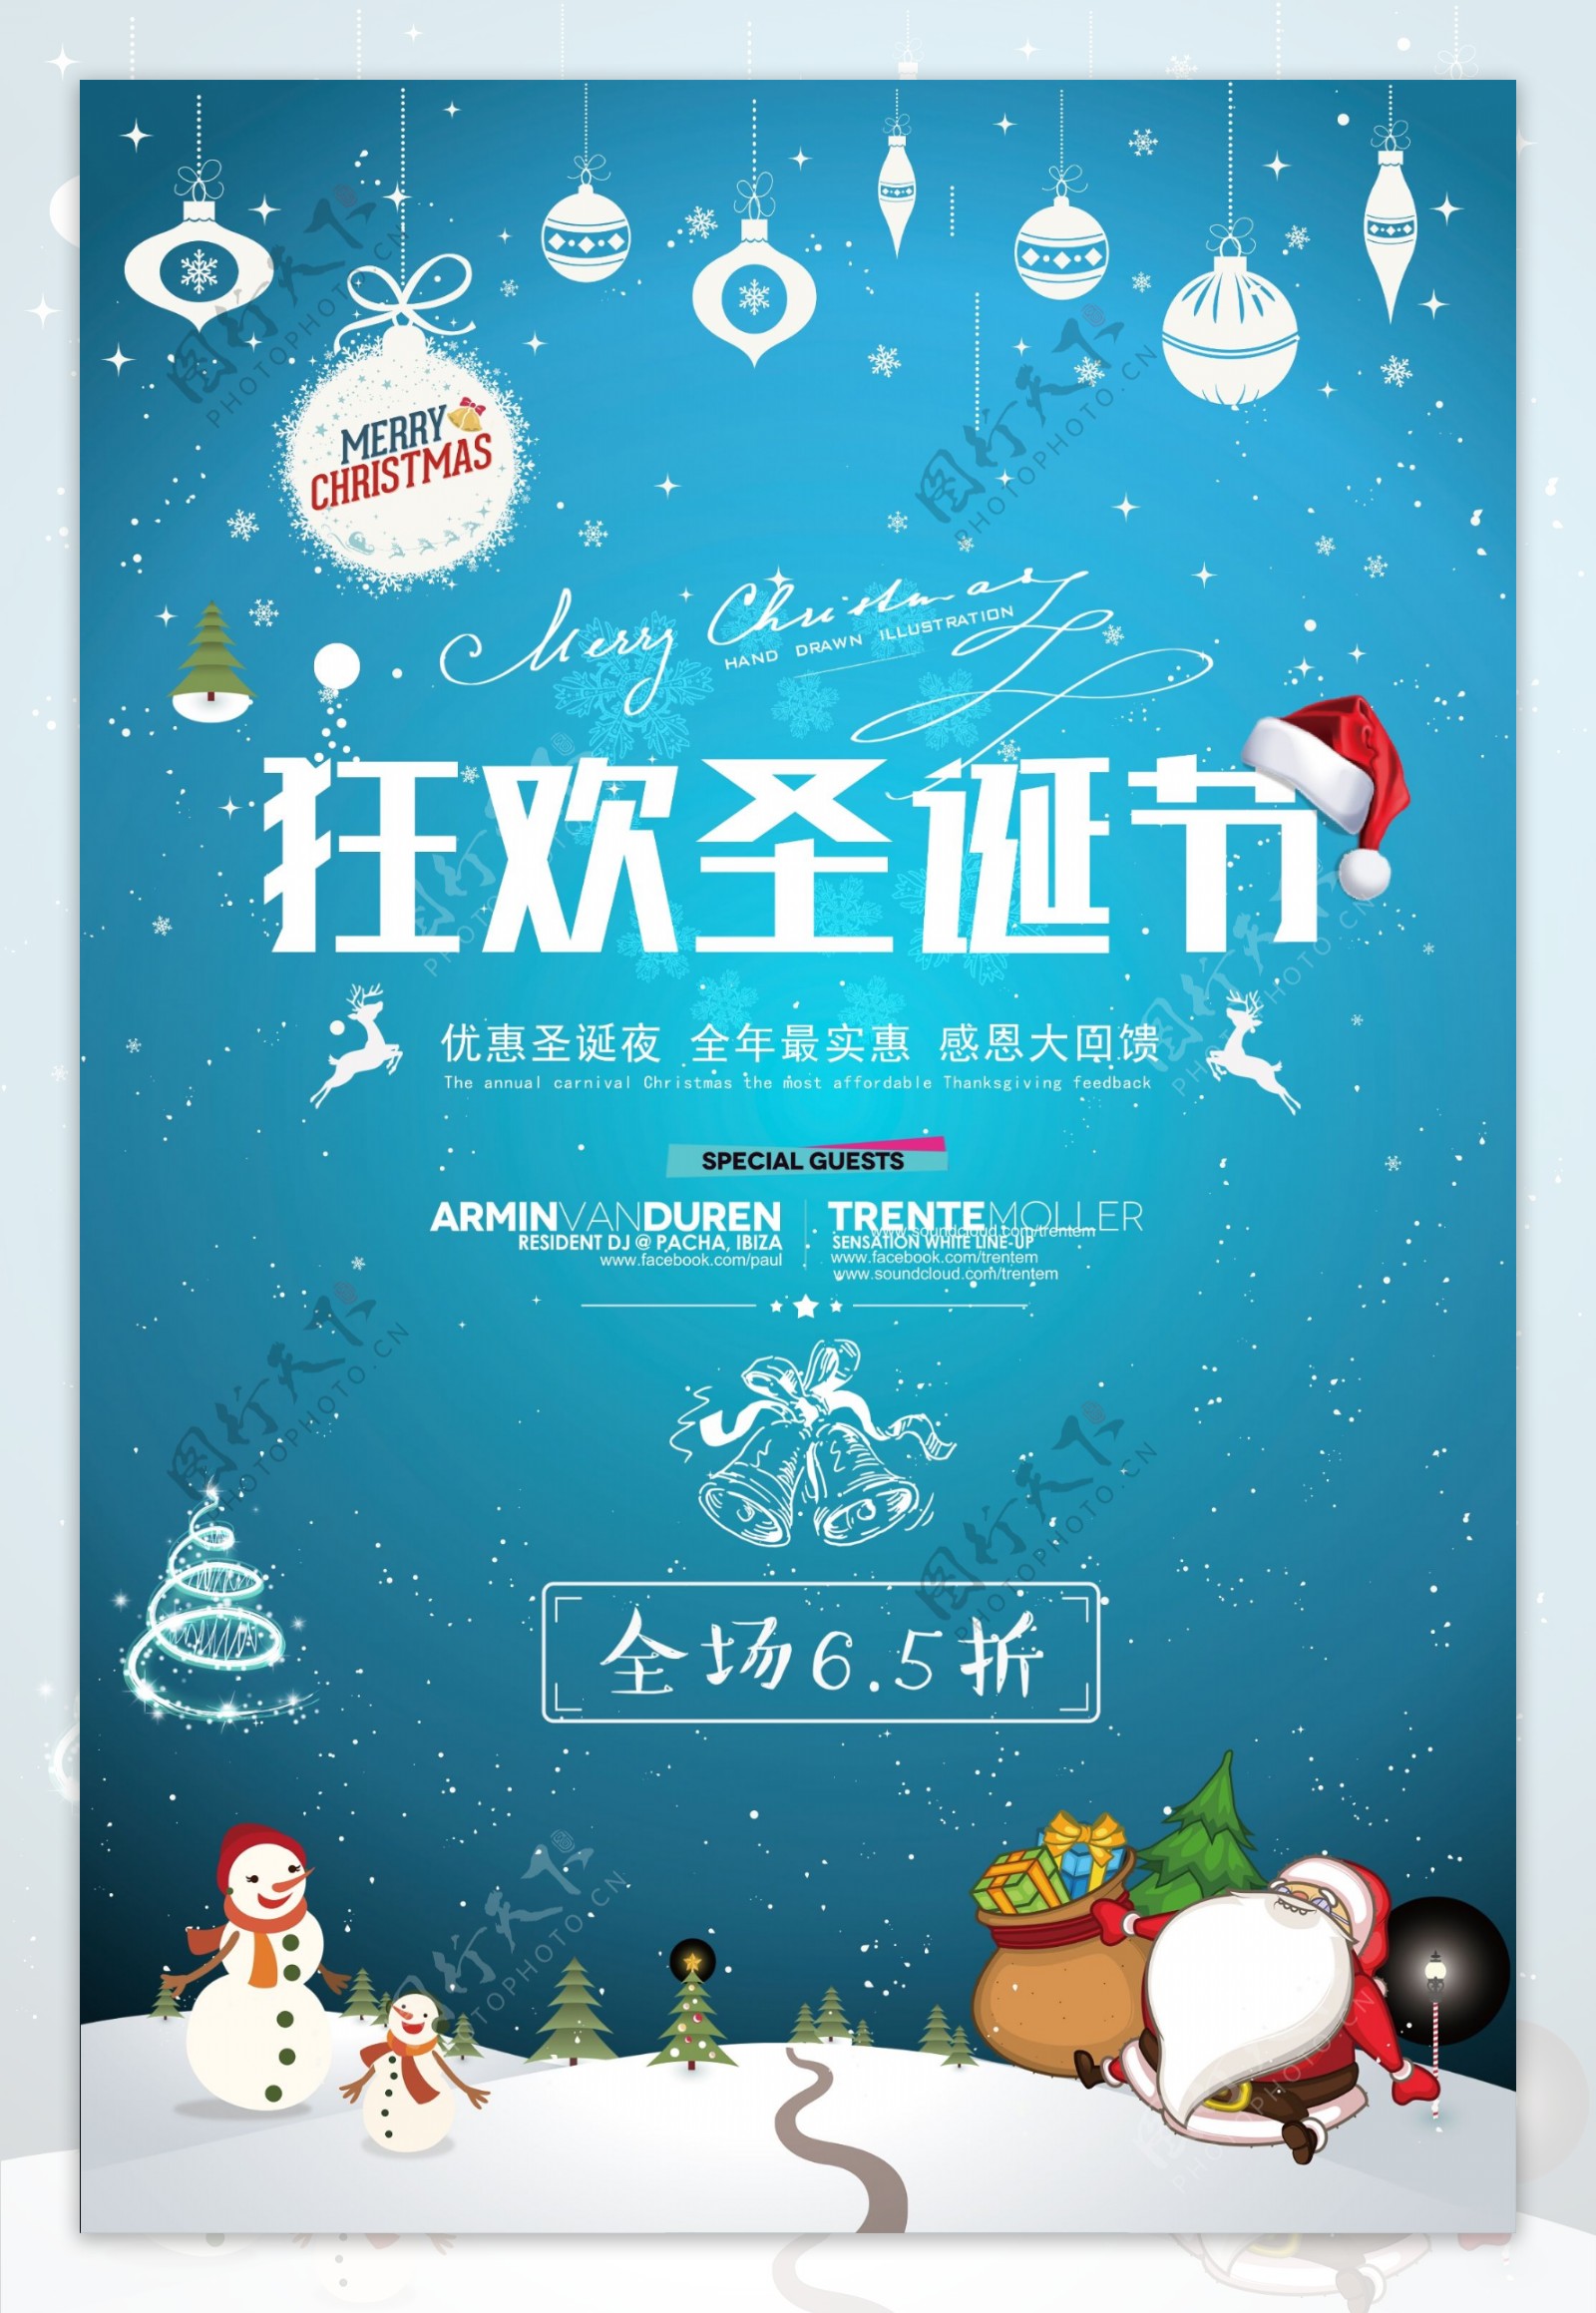 蓝色小清新圣诞节促销海报设计